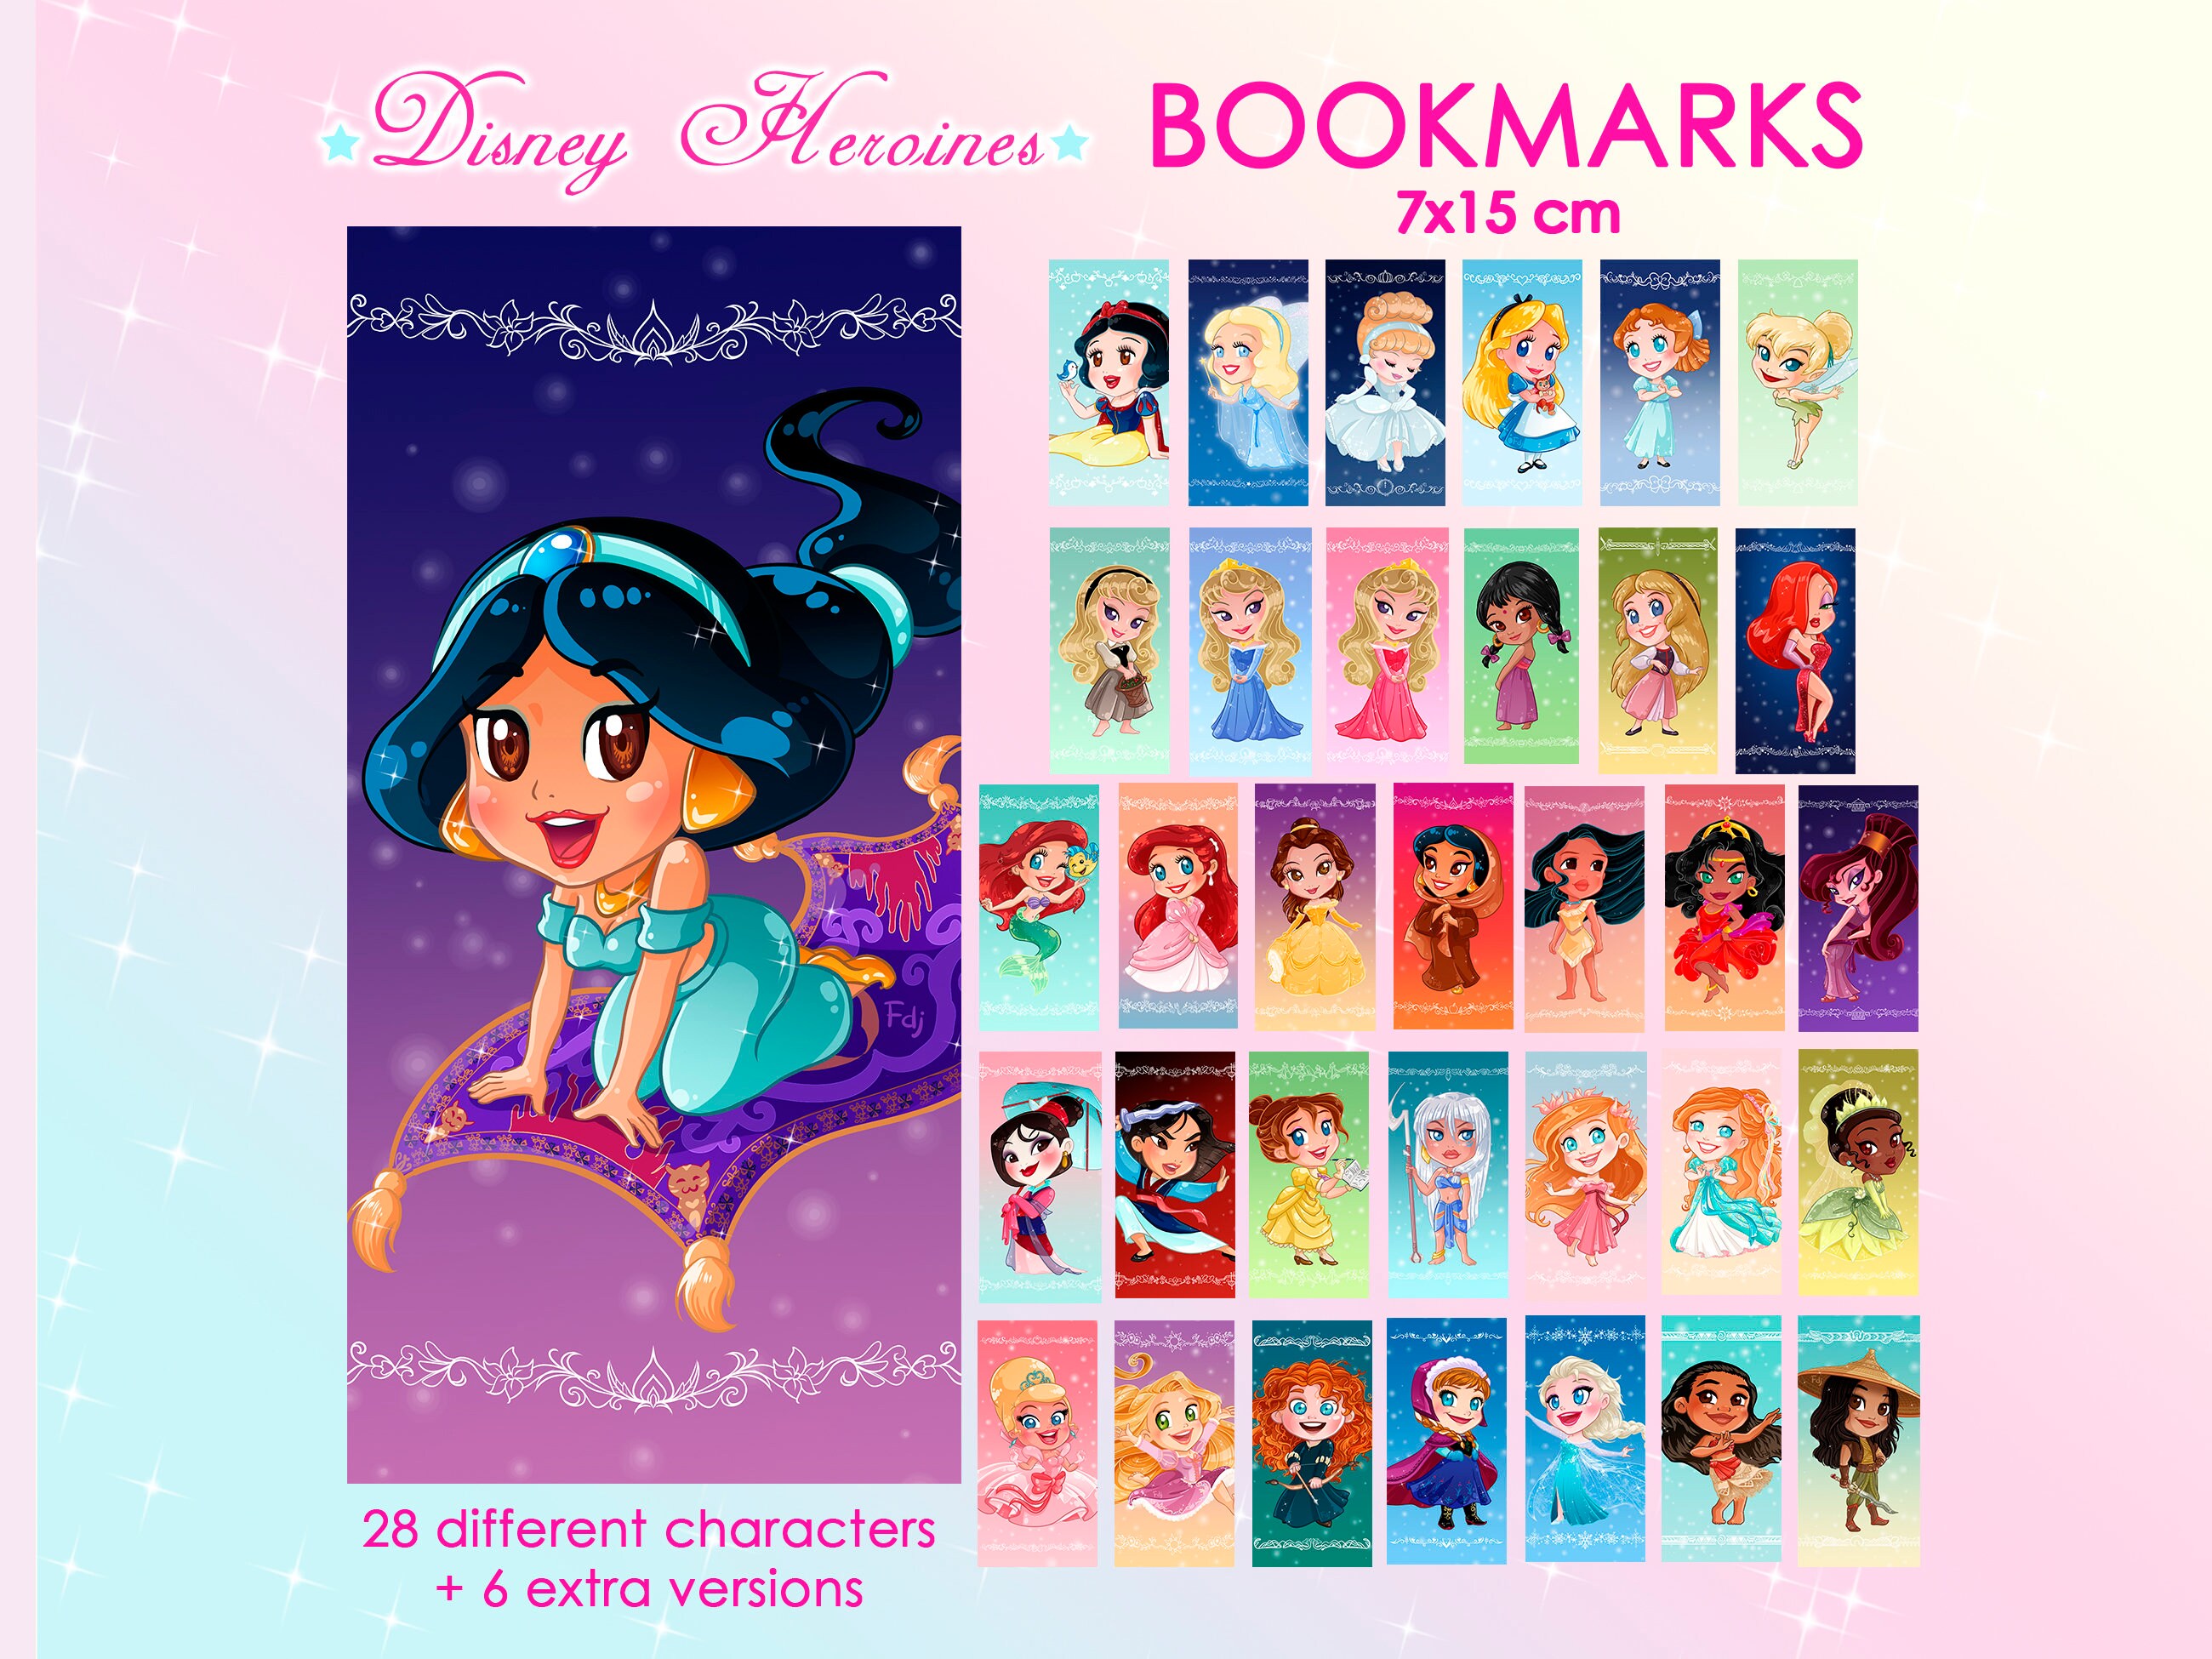 Crianças adesivo livro para meninas kawaii princesa boneca fazer